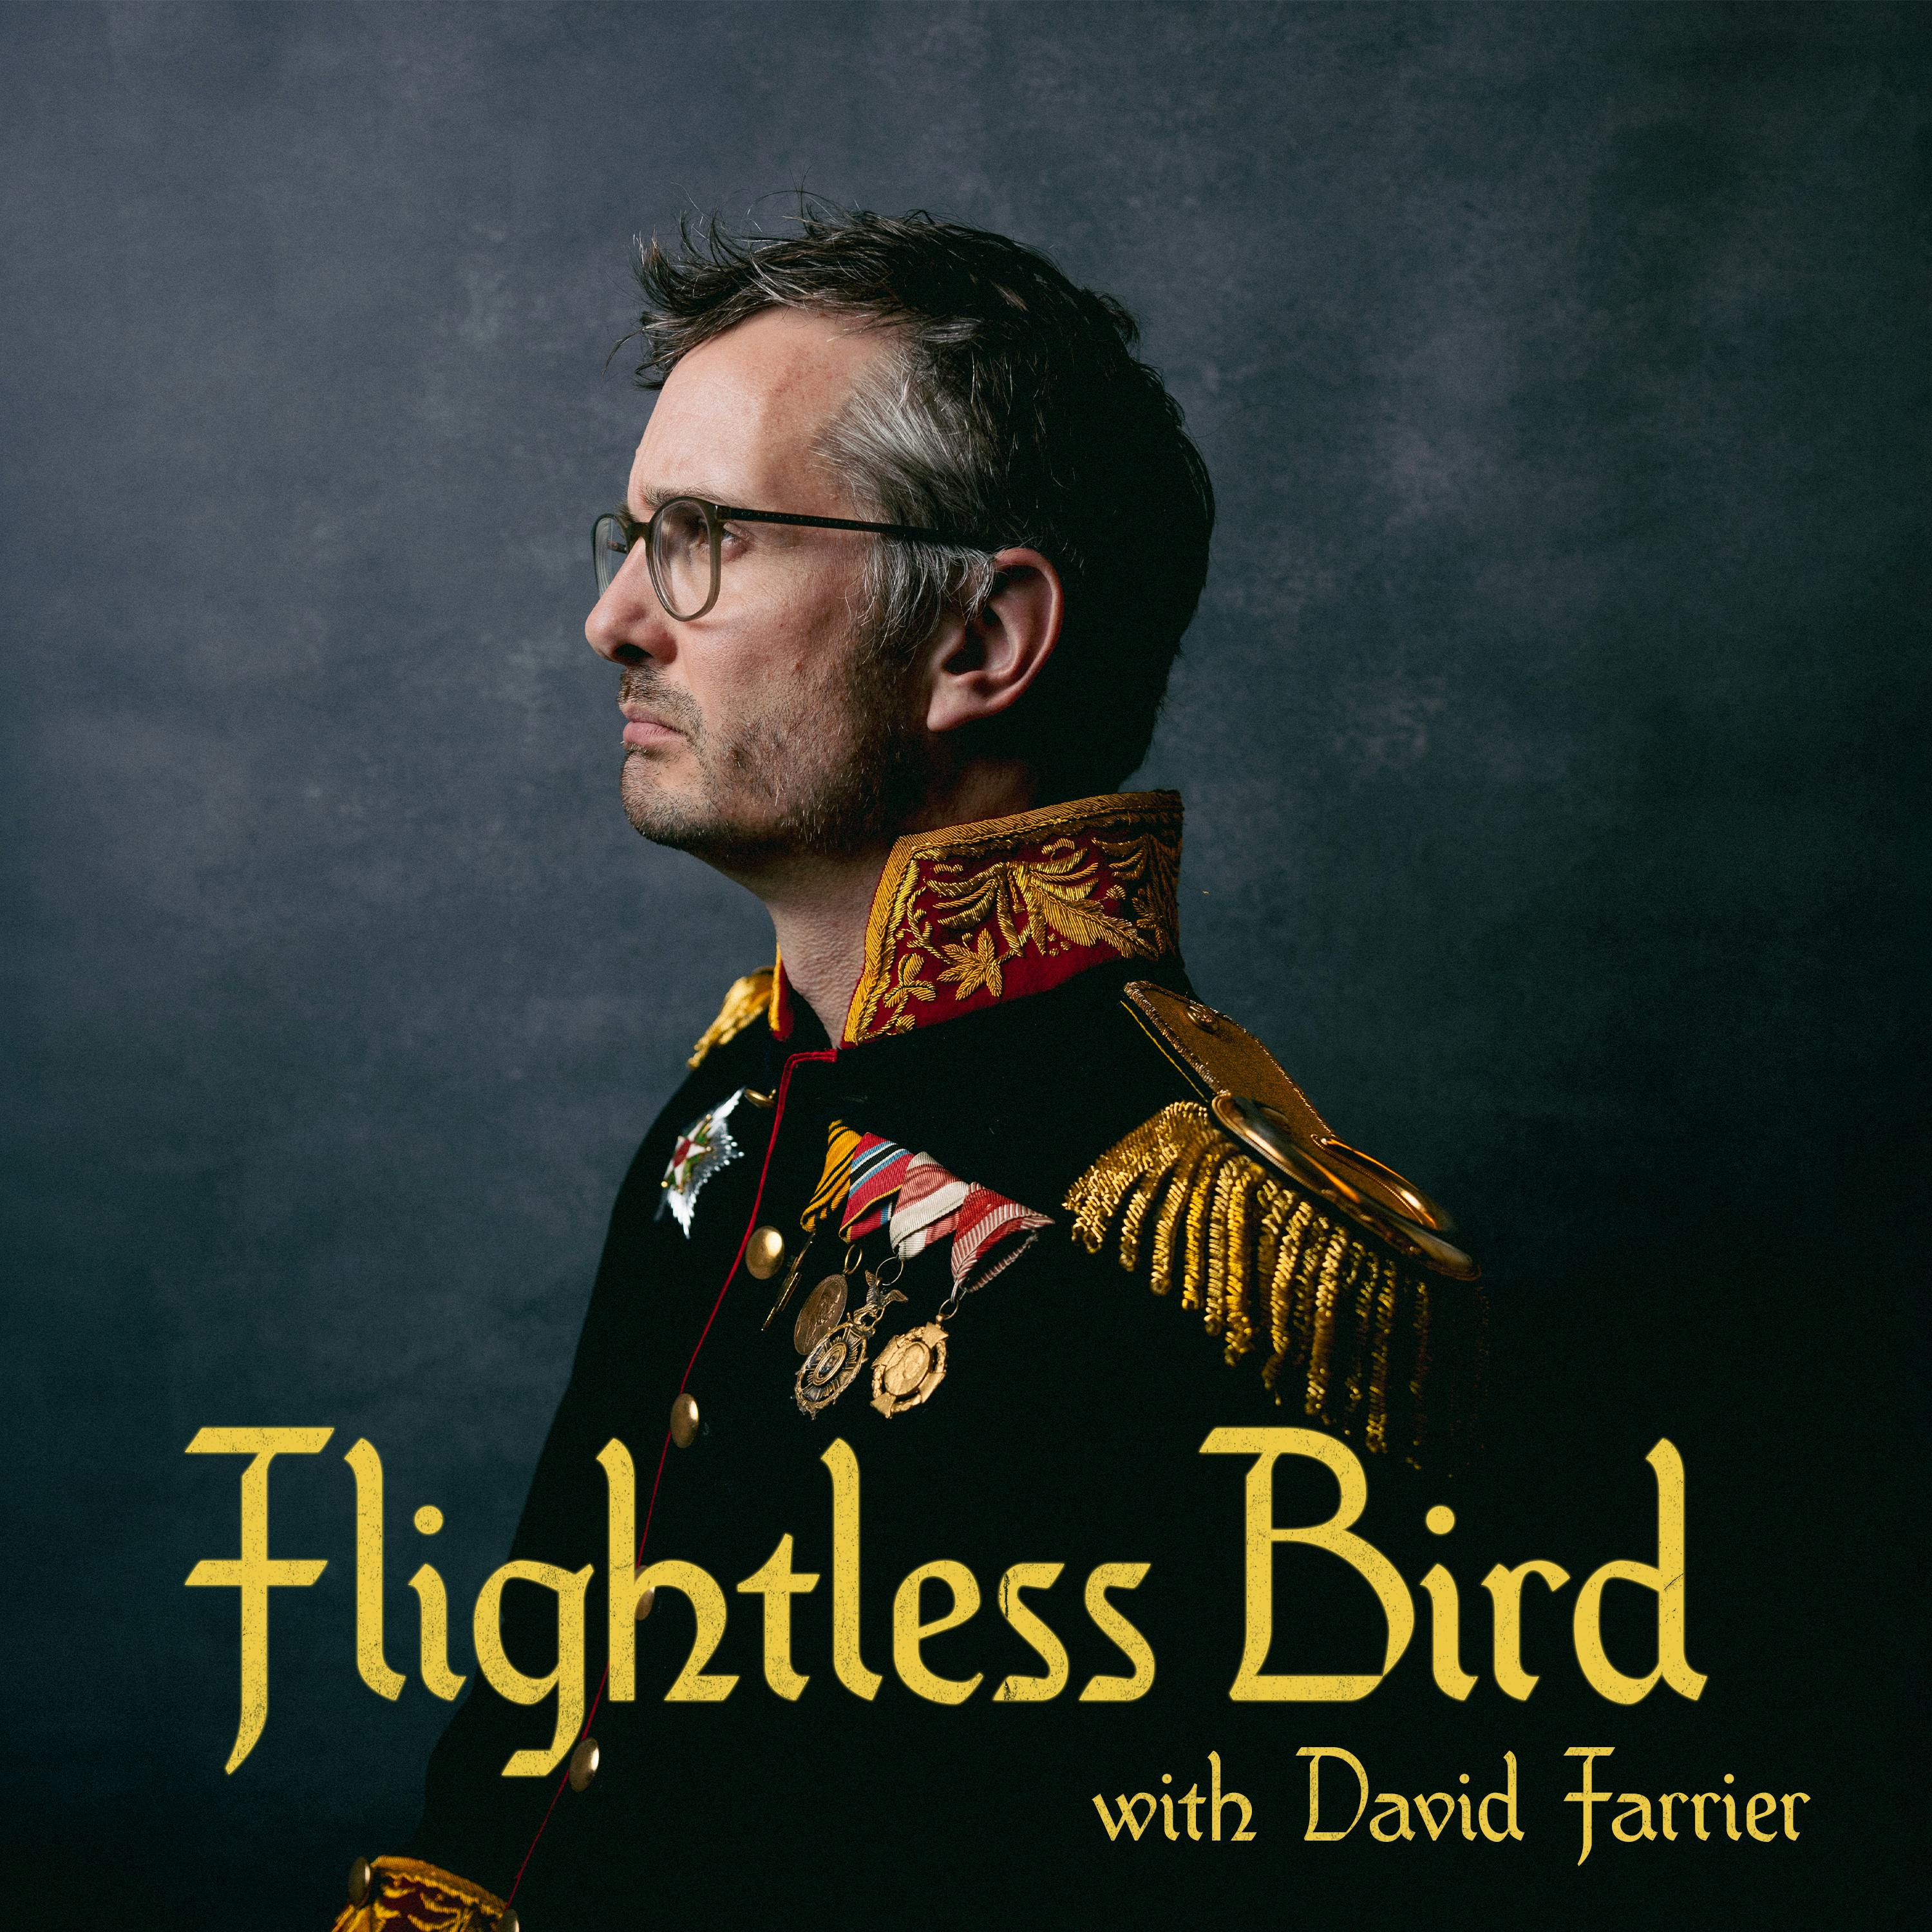 Flightless Bird: Flights of Fancy